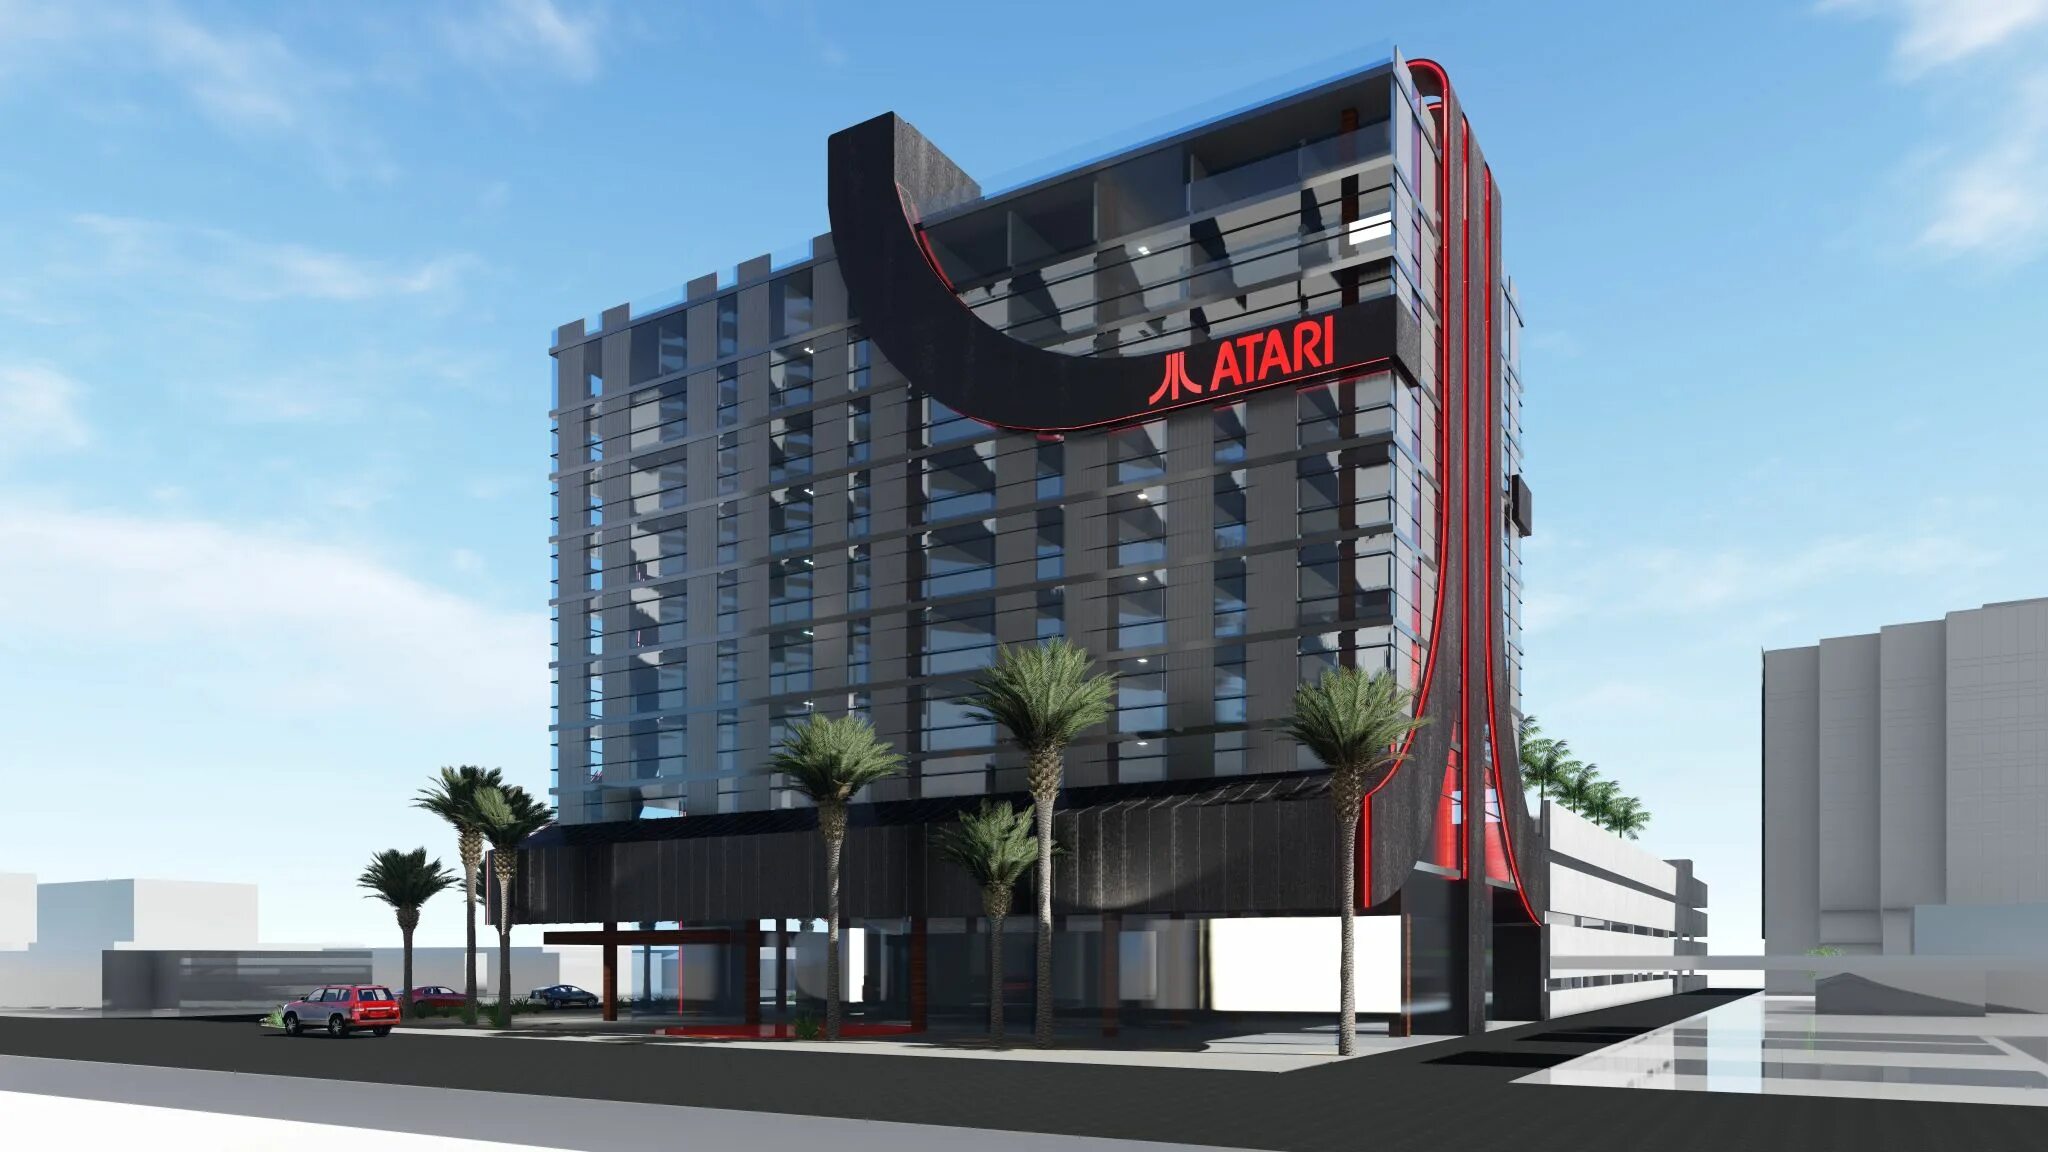 Property gaming. Здание игровой студии. Atari Hotel. Игровая в гостинице. Атари здание компании.